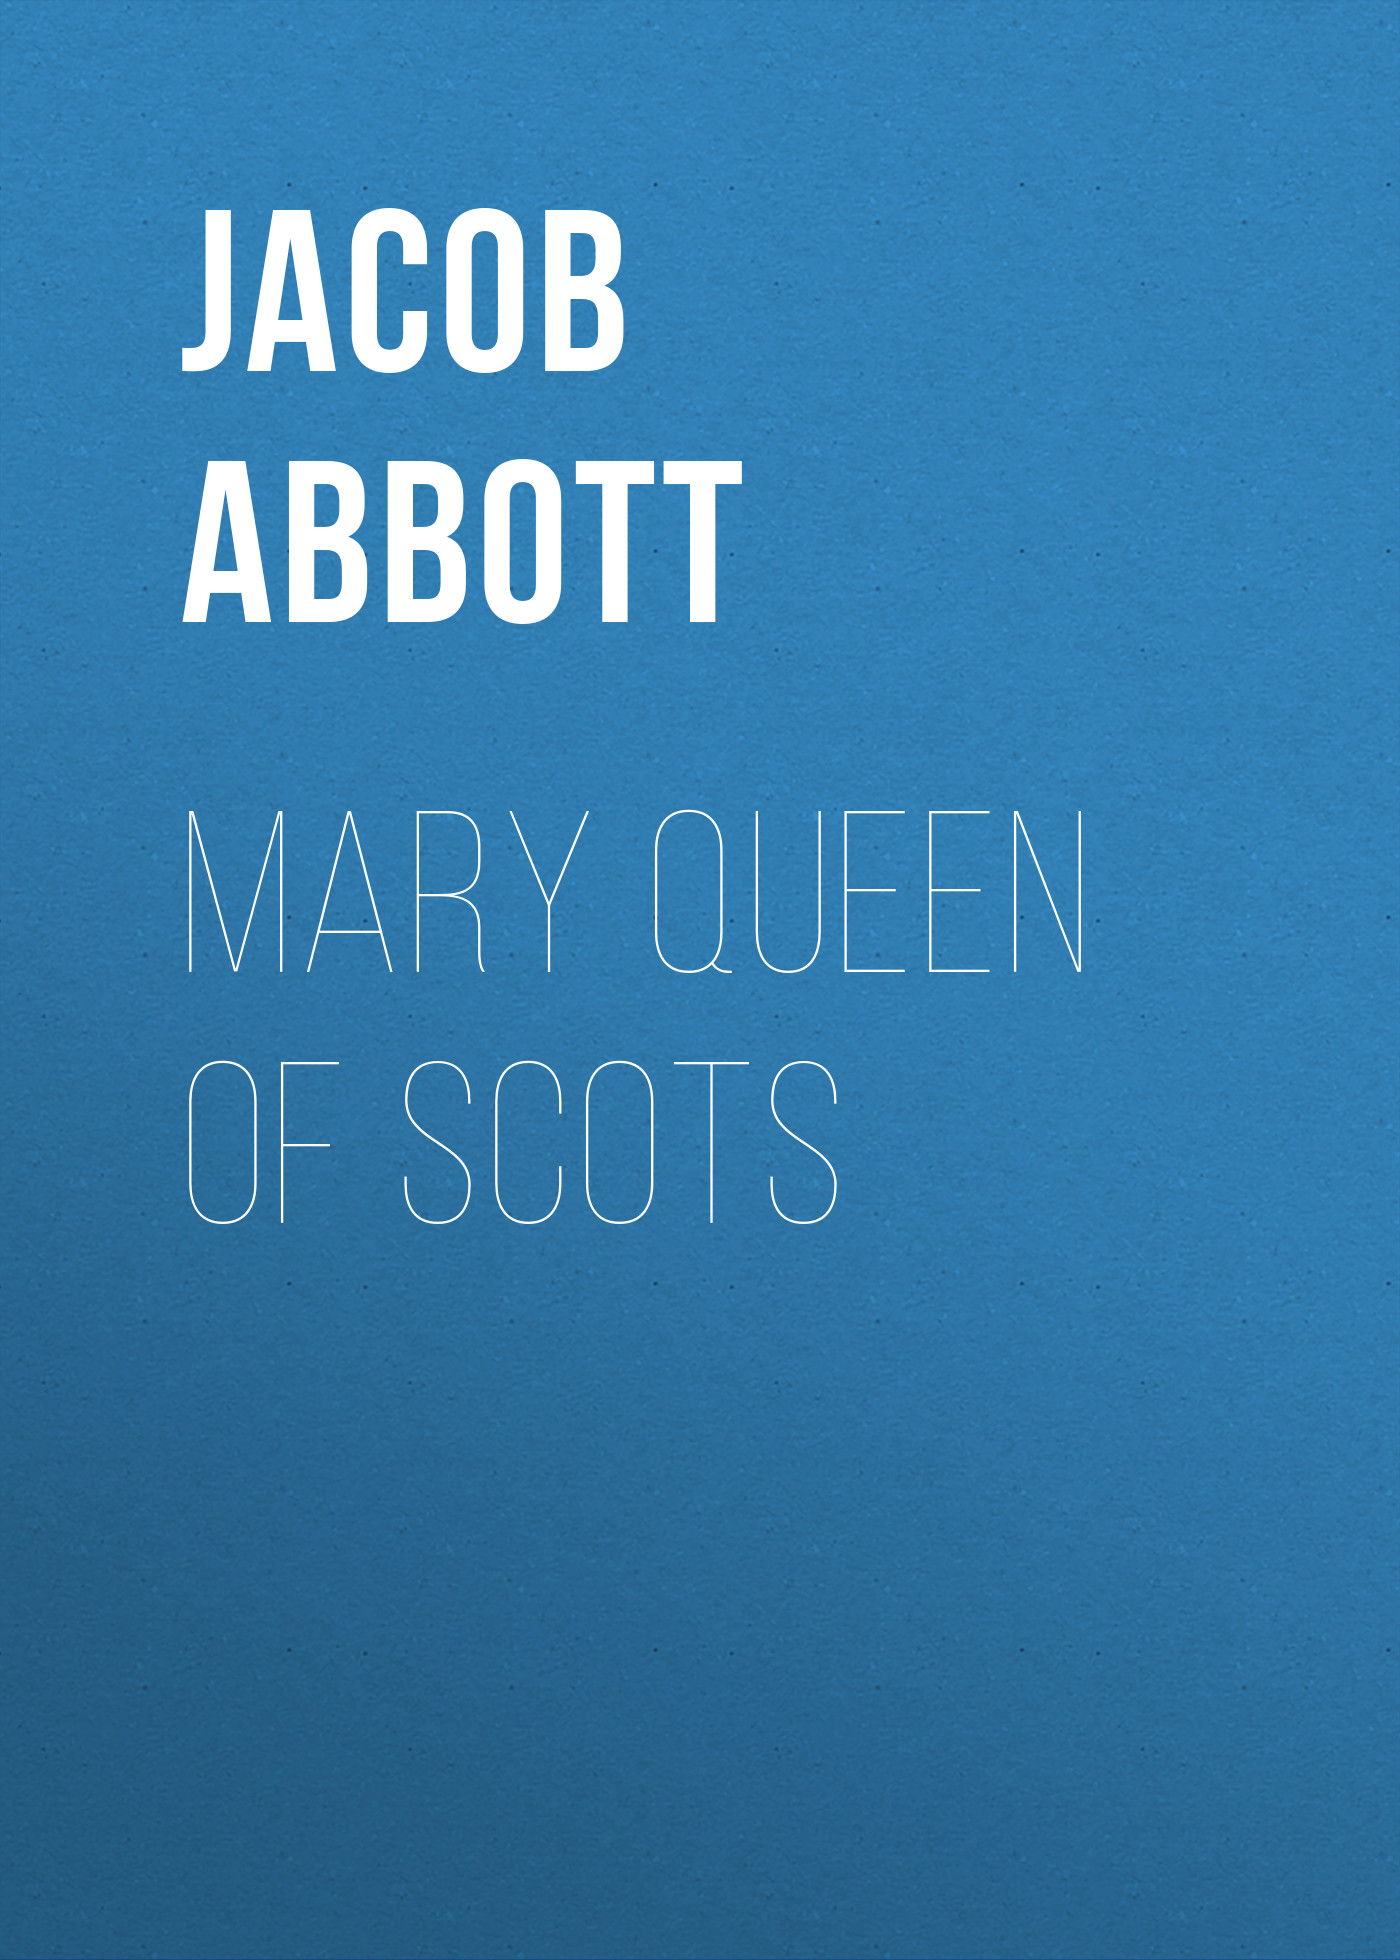 Книга Mary Queen of Scots из серии , созданная Jacob Abbott, может относится к жанру Зарубежная старинная литература, Зарубежная классика, Историческая литература. Стоимость электронной книги Mary Queen of Scots с идентификатором 24170980 составляет 0.90 руб.